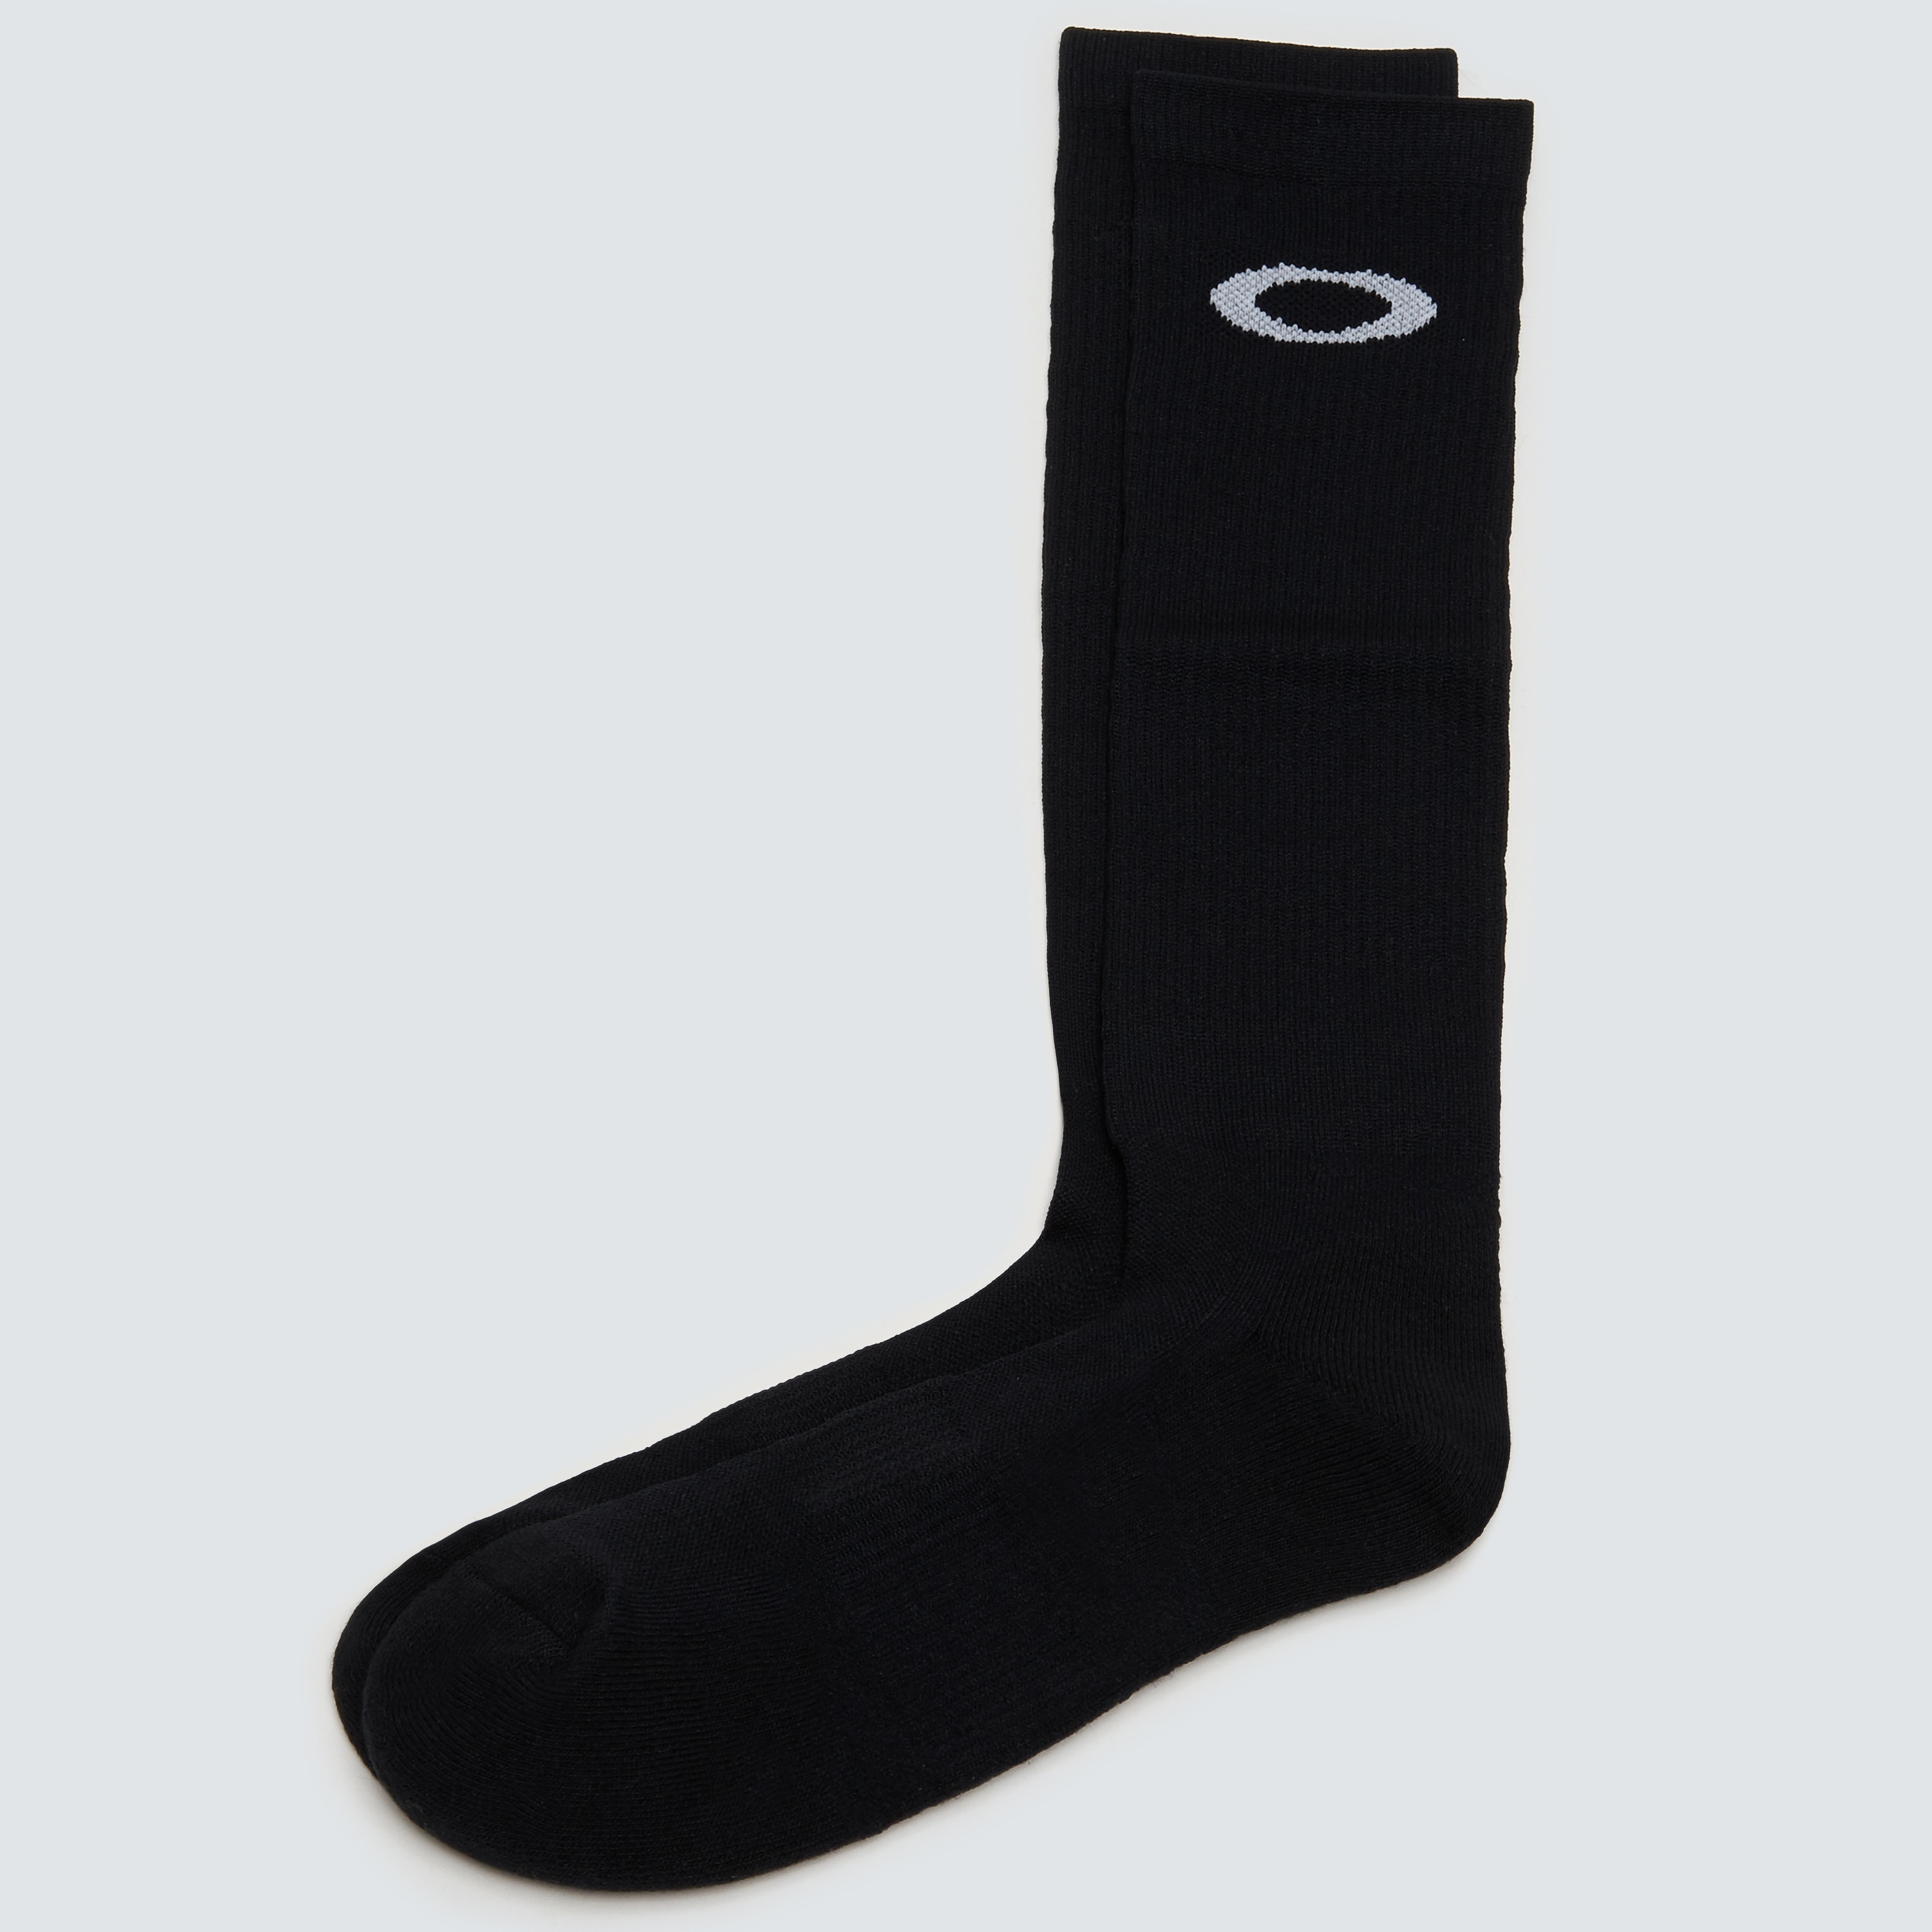 Oakley Long Socks 3.0 - Blackout 